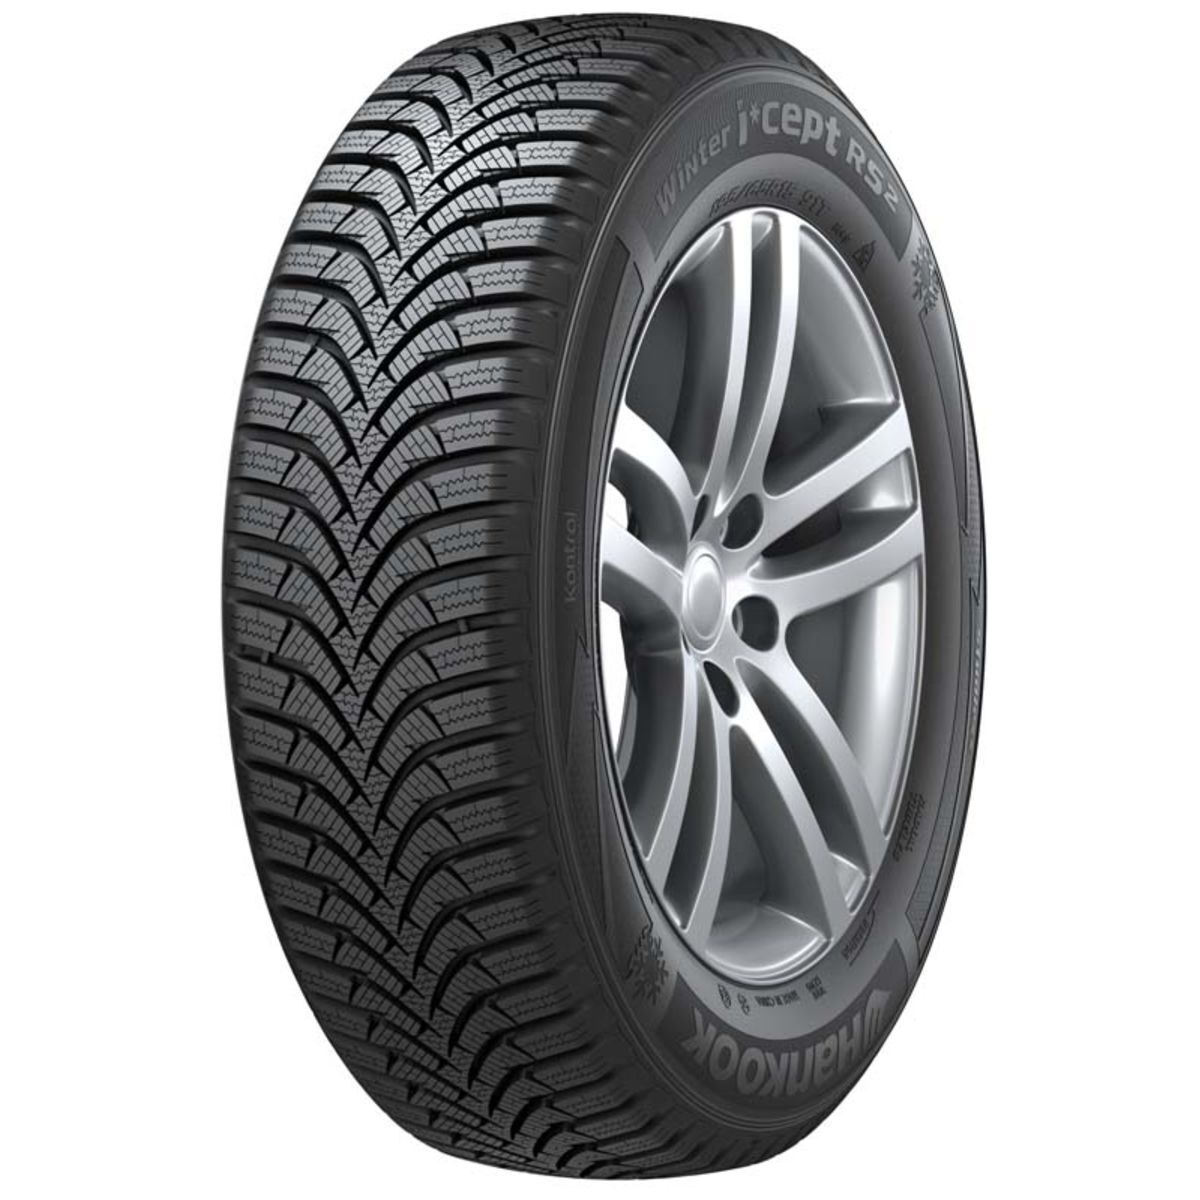 Neumáticos de invierno HANKOOK Winter i*cept RS2 W452 195/60R16 89H